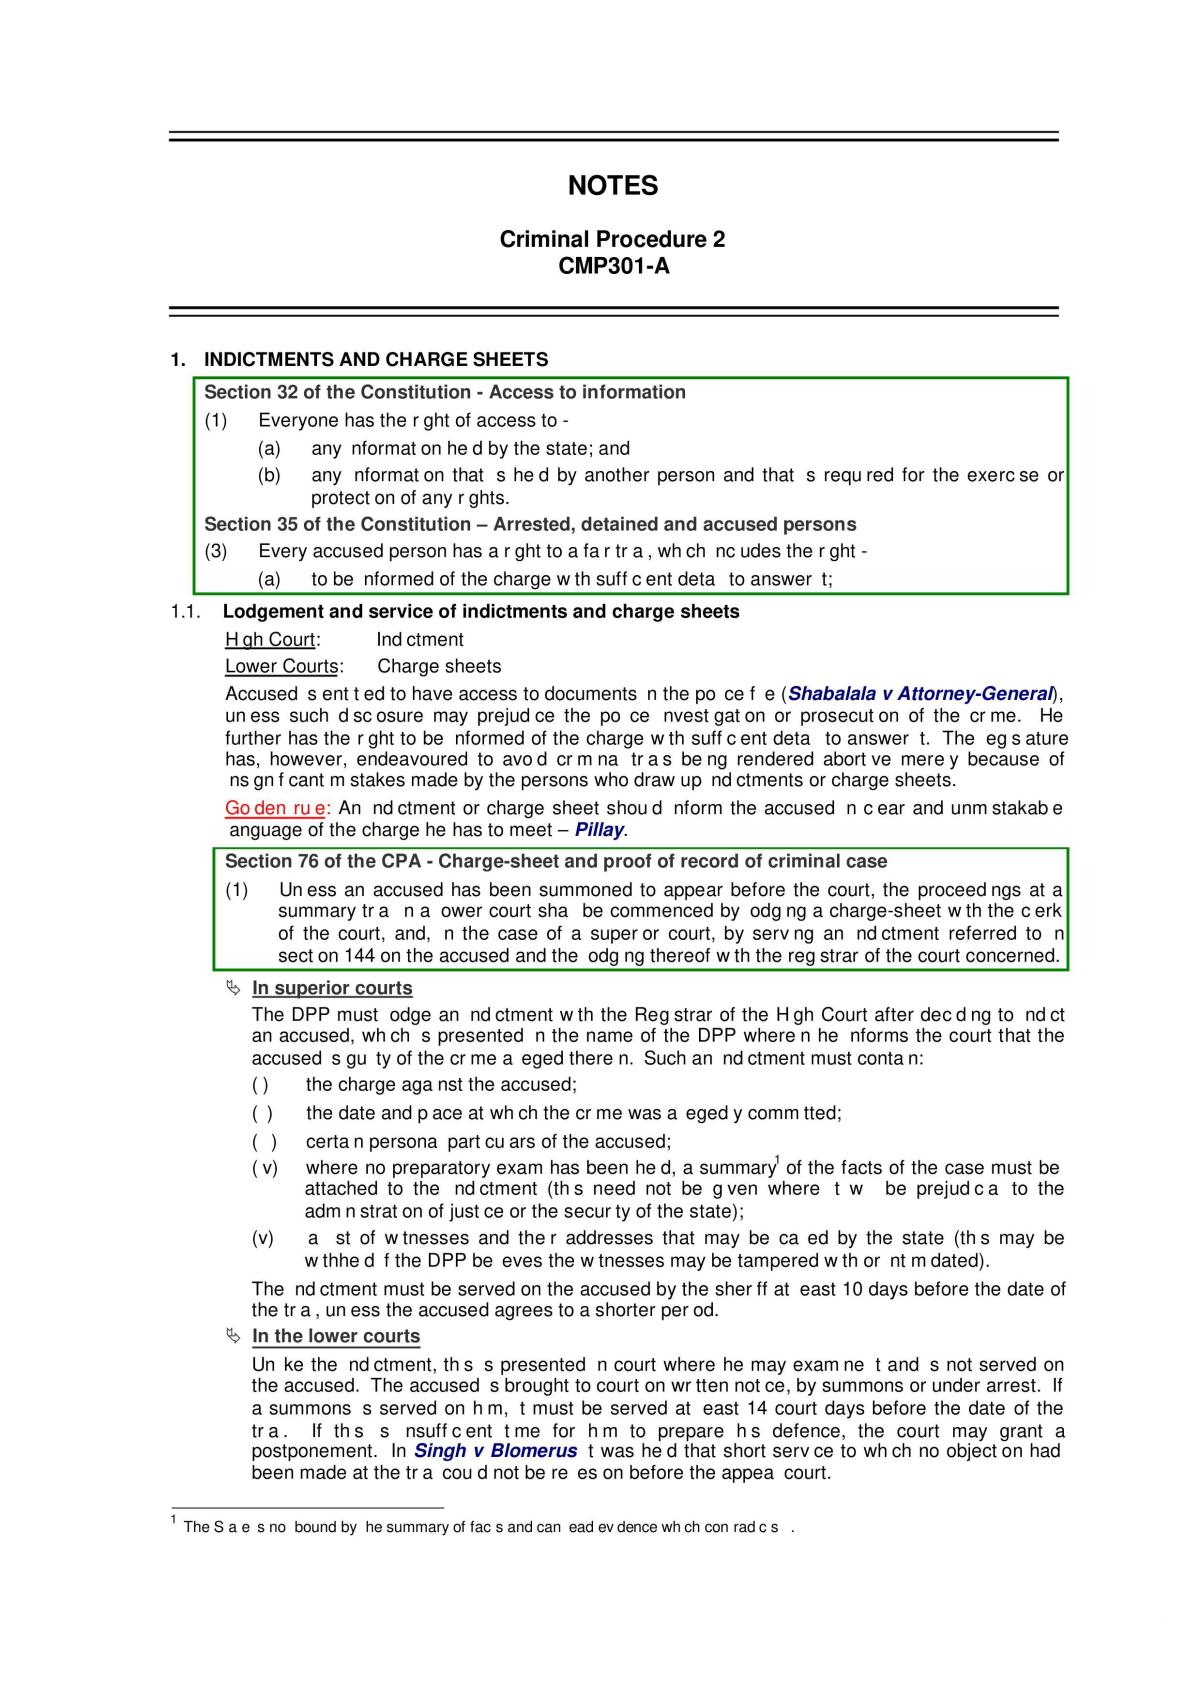 Criminal Procedure Course Notes - Page 1